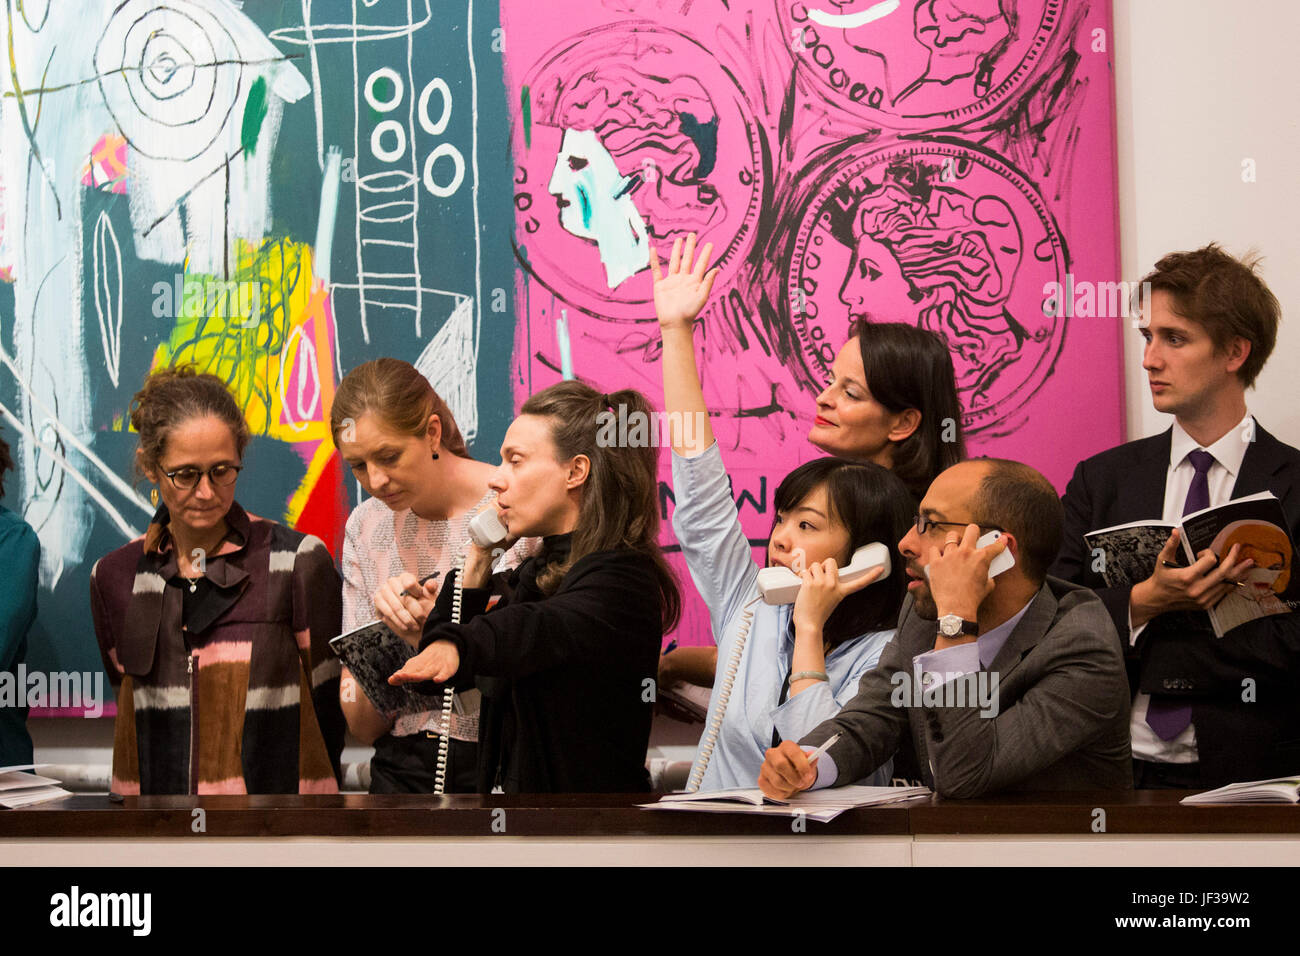 Londres, Royaume-Uni. 28 juin 2017. Sotheby's personnel téléphone les offres des cliients en face de l'Andy Warhol et Jean-Michel Basquiat collaboration nouvelle flamme, 1985, qui a vendu pour 2 408 750 GBP. Soirée d'art contemporain de Sotheby's Vente aux enchères a lieu à leurs nouveaux locaux de Bond Street. Banque D'Images